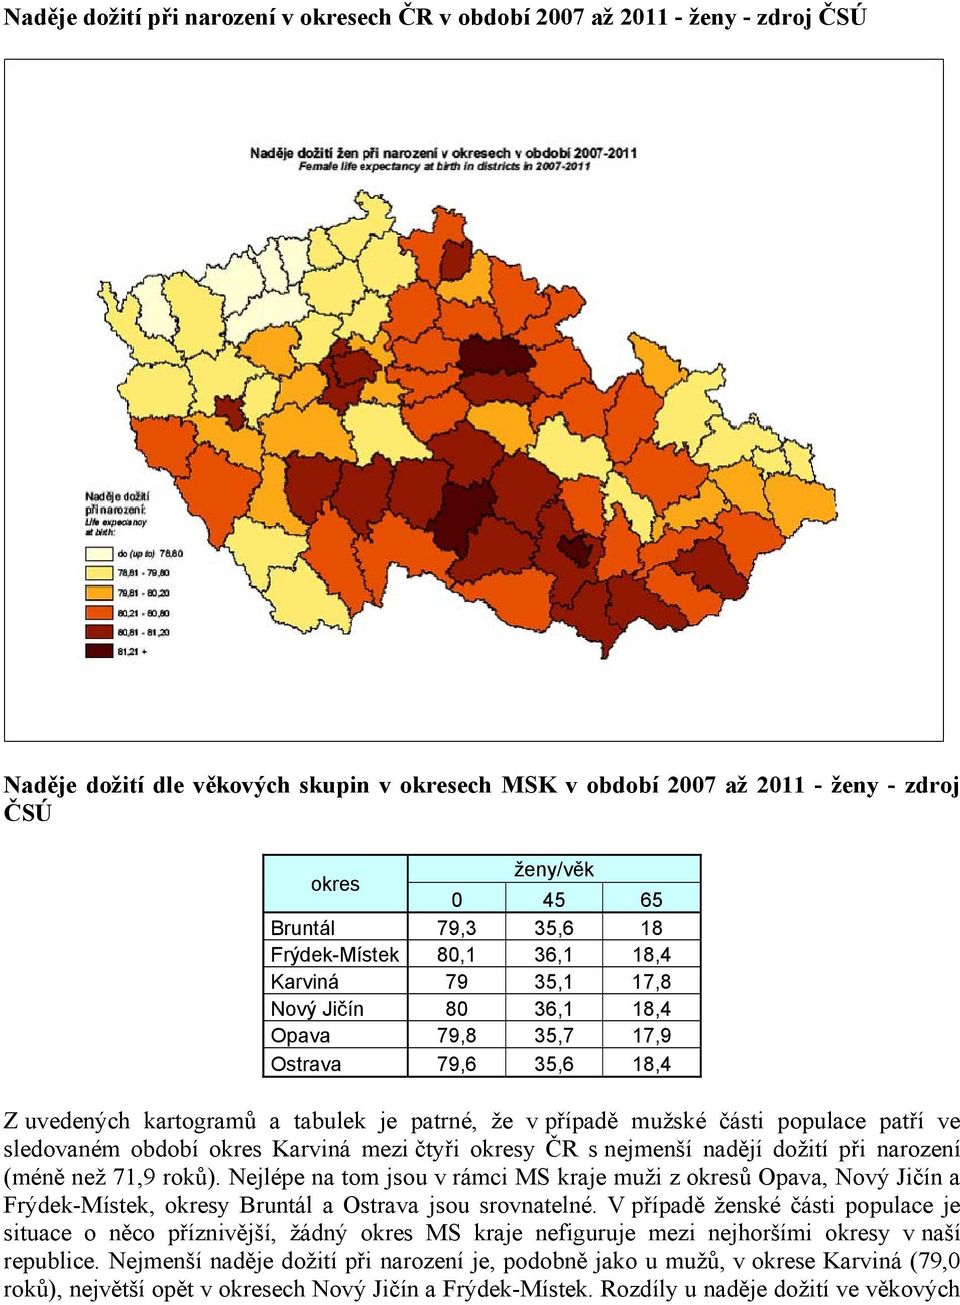 mužské části populace patří ve sledovaném období okres Karviná mezi čtyři okresy ČR s nejmenší nadějí dožití při narození (méně než 71,9 roků).